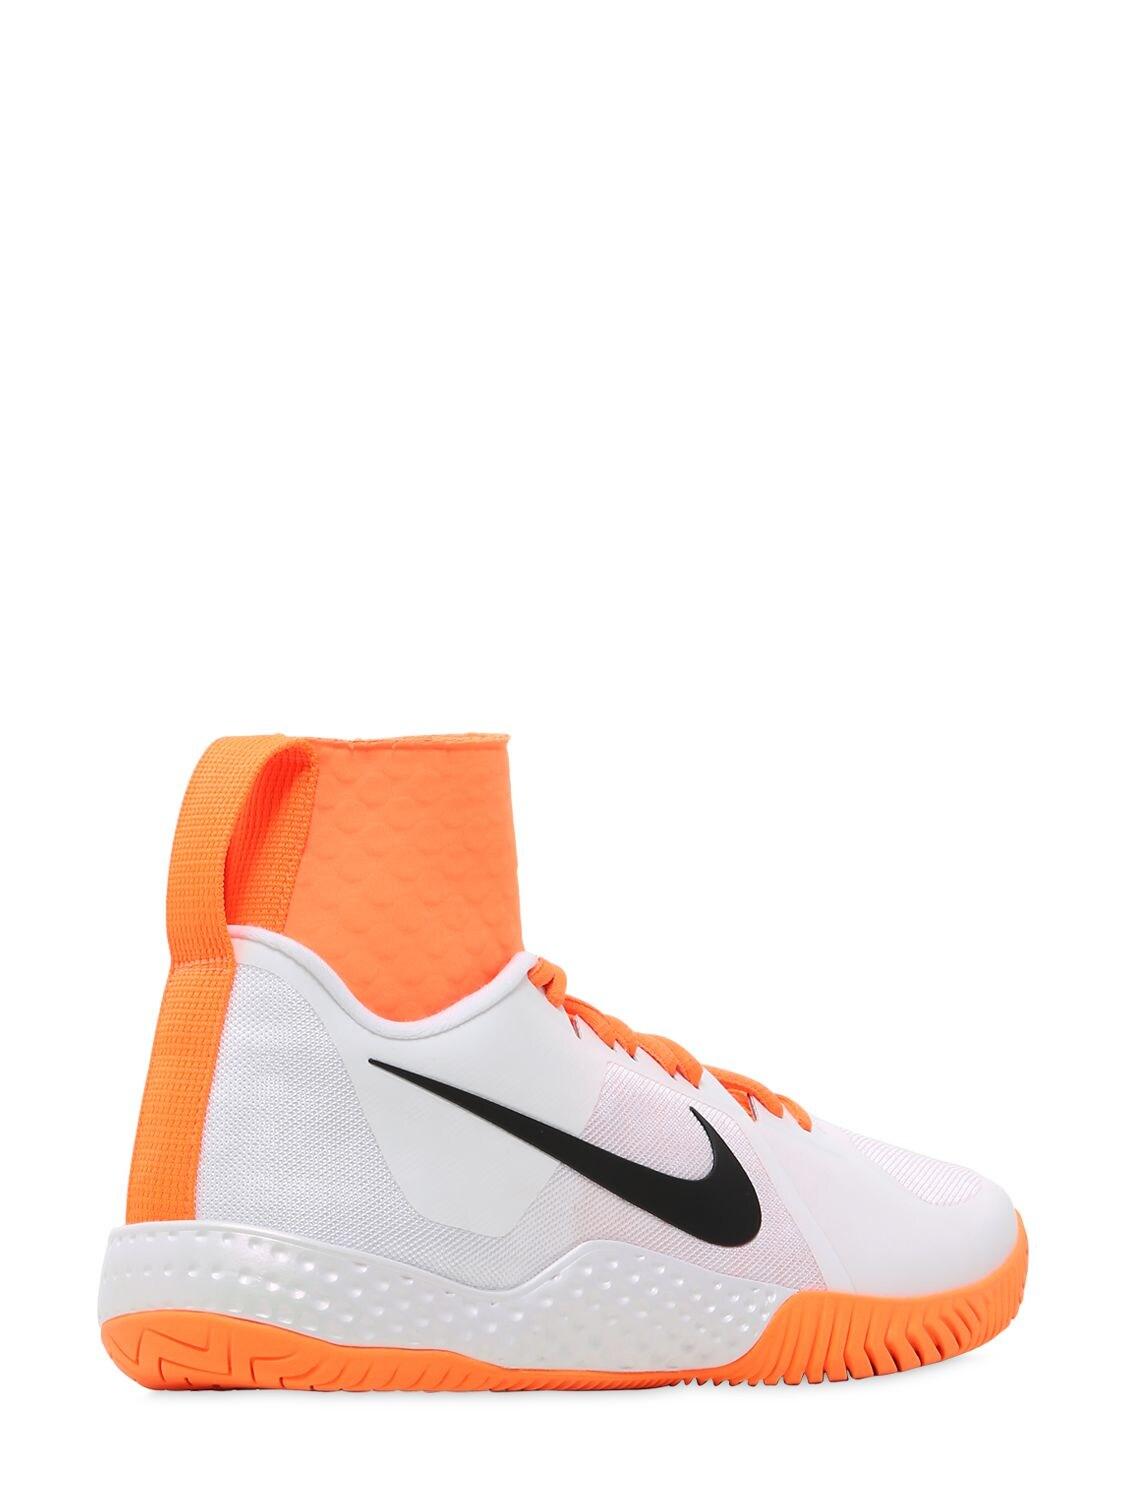 Nike Serena Williams Flare Tennis Sneakers in Orange | Lyst